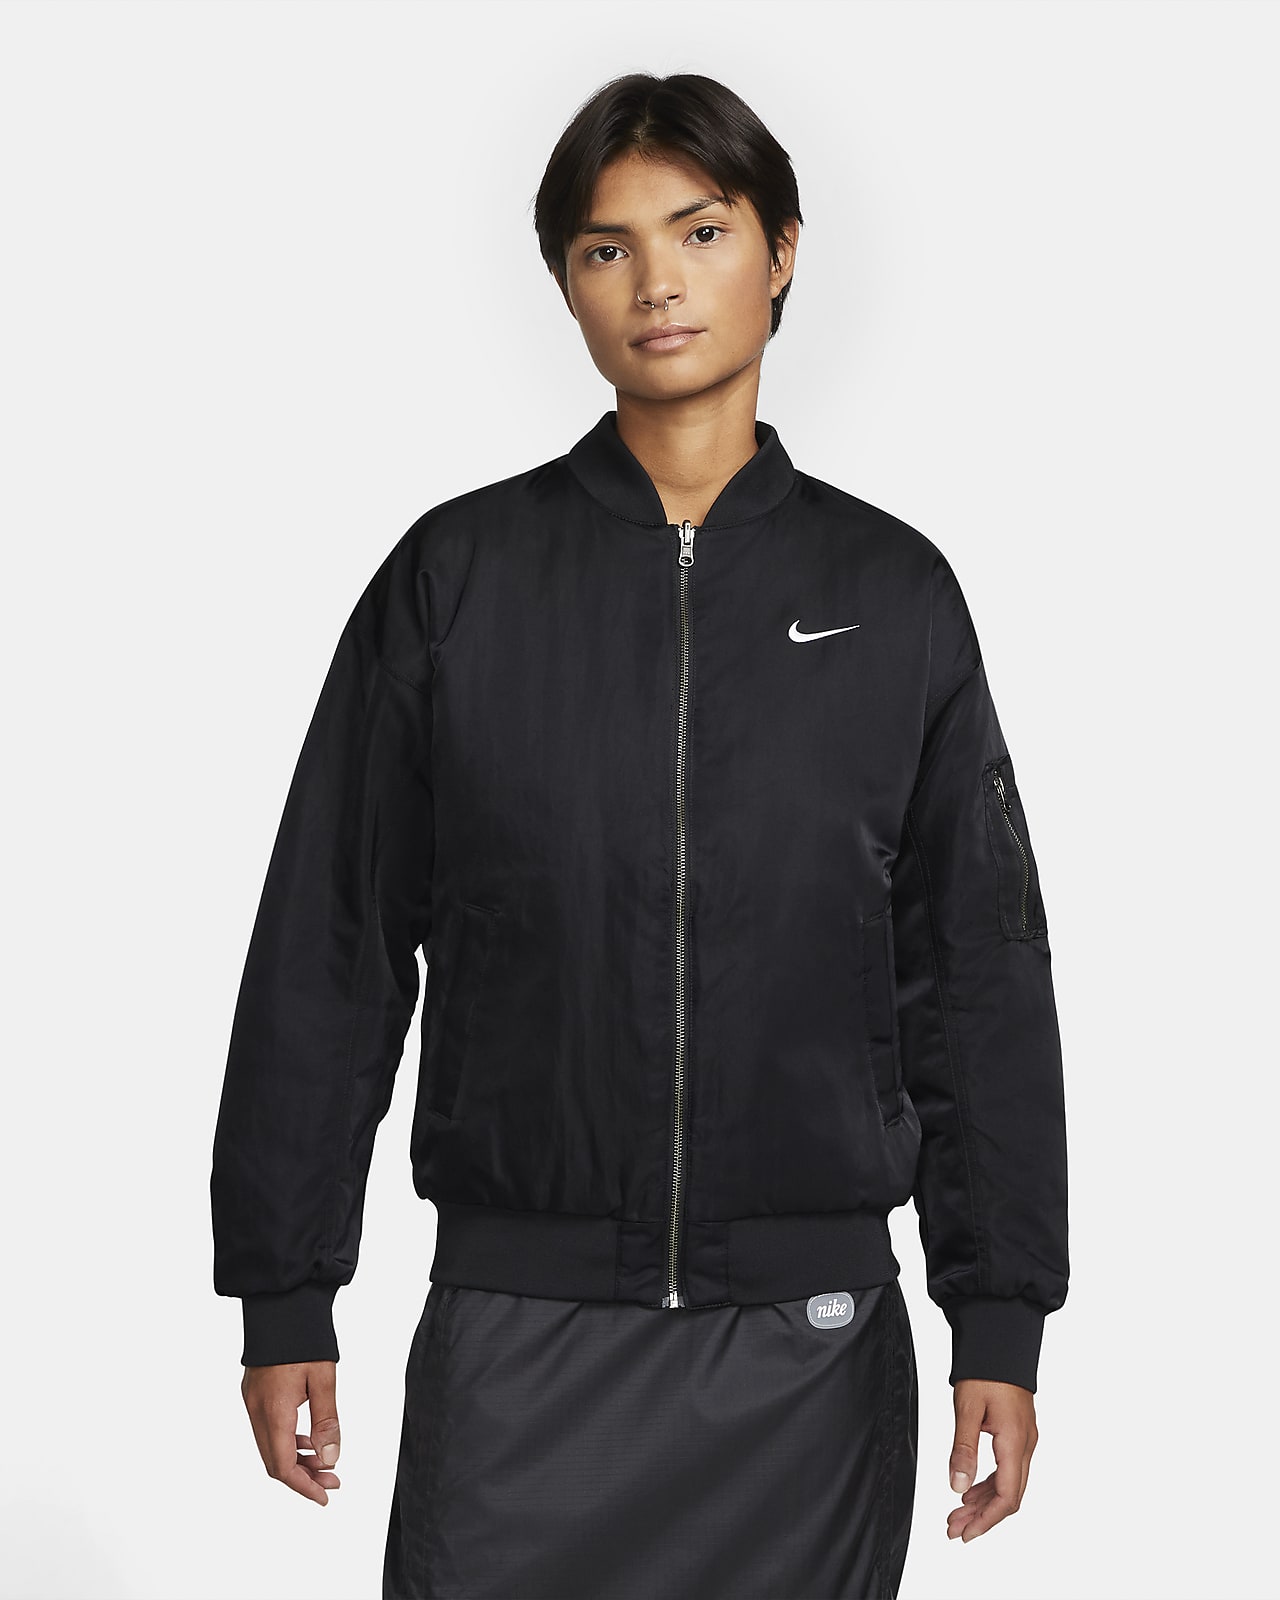 Nike Sportswear Çift Taraflı Kolej Stili Kadın Bomber Ceket